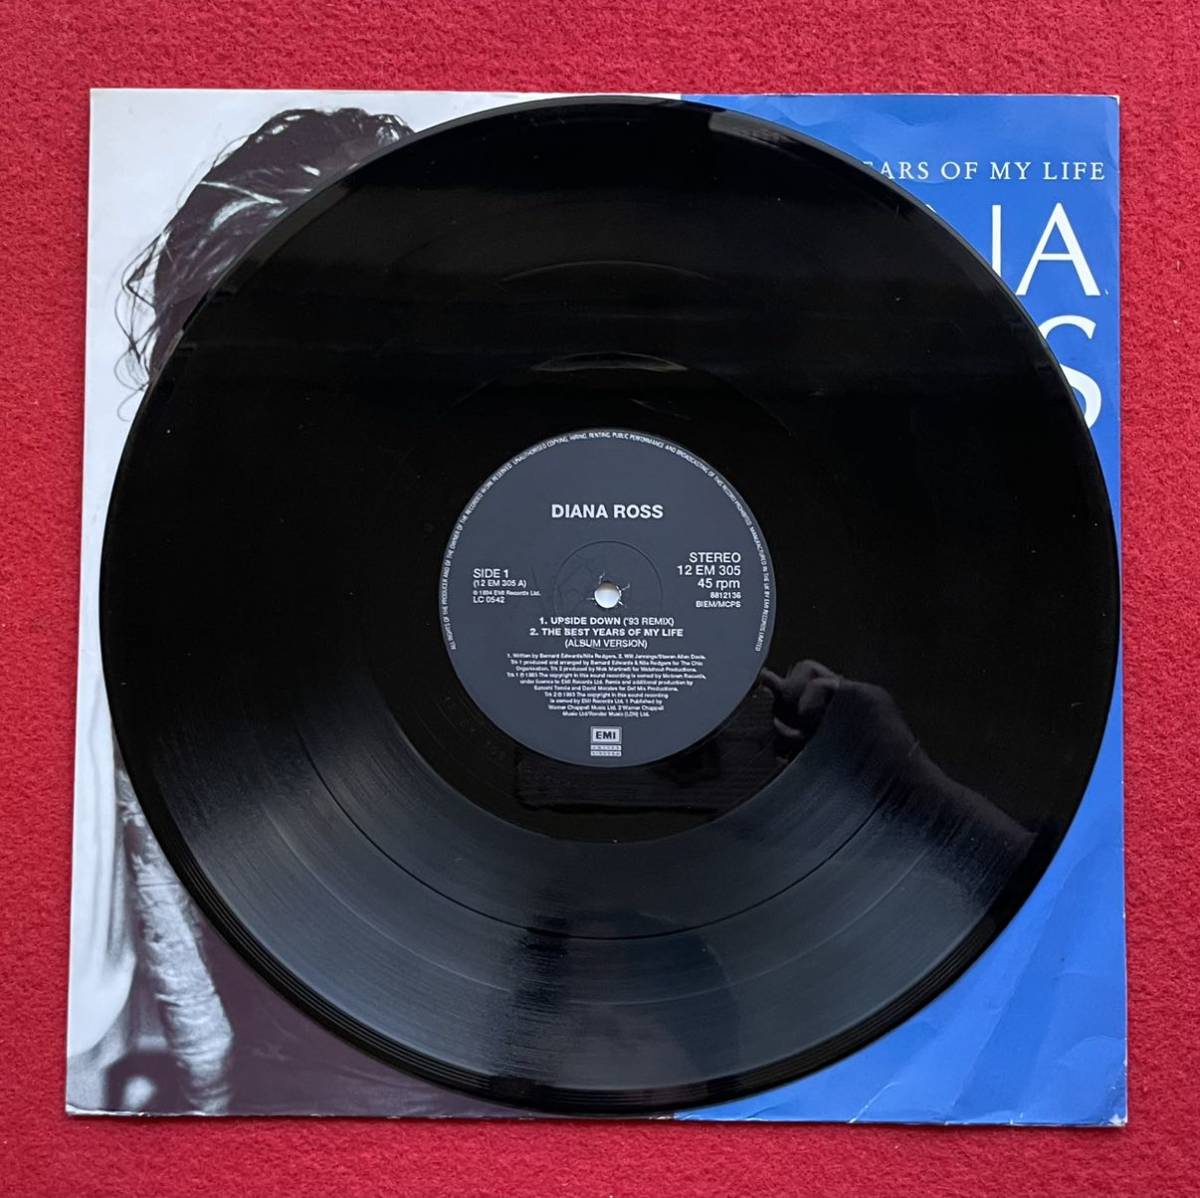 Diana Ross人気曲アップサイド・ダウン 12inch盤 その他にもプロモーション盤 レア盤 人気レコード 多数出品。_画像4